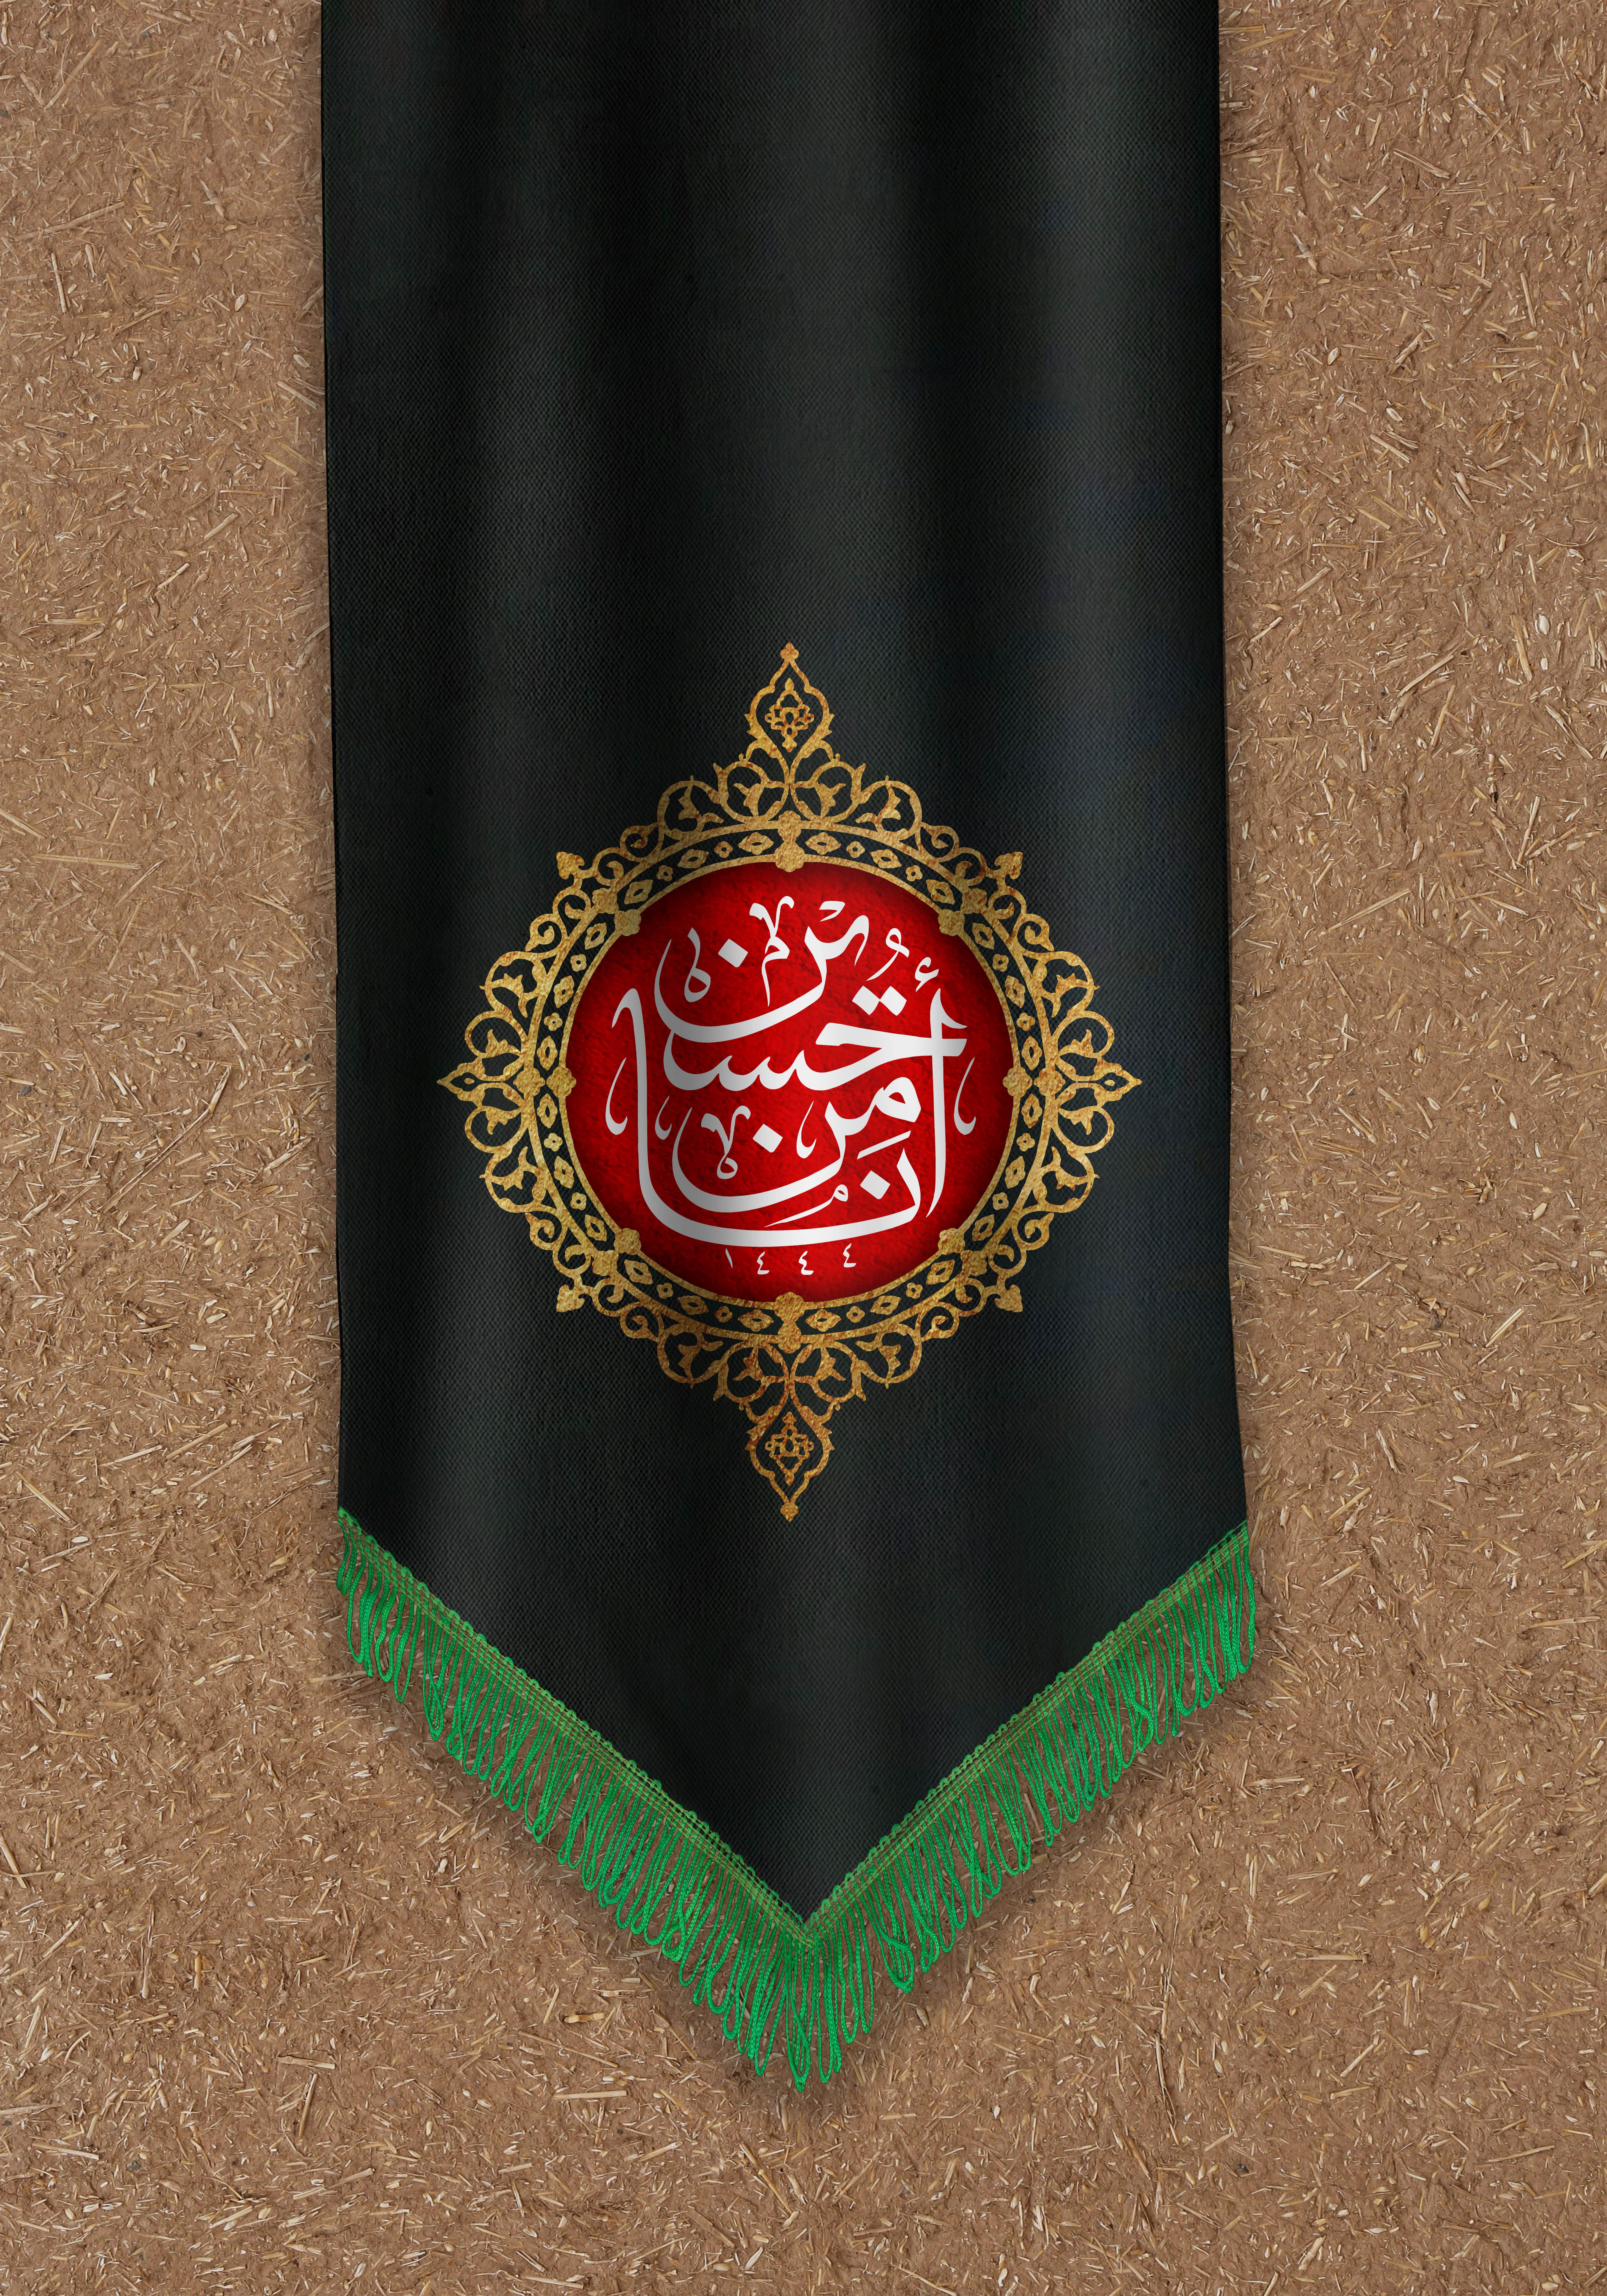 دانلود طرح لایه باز پرچم عزاداری امام حسین علیه السلام